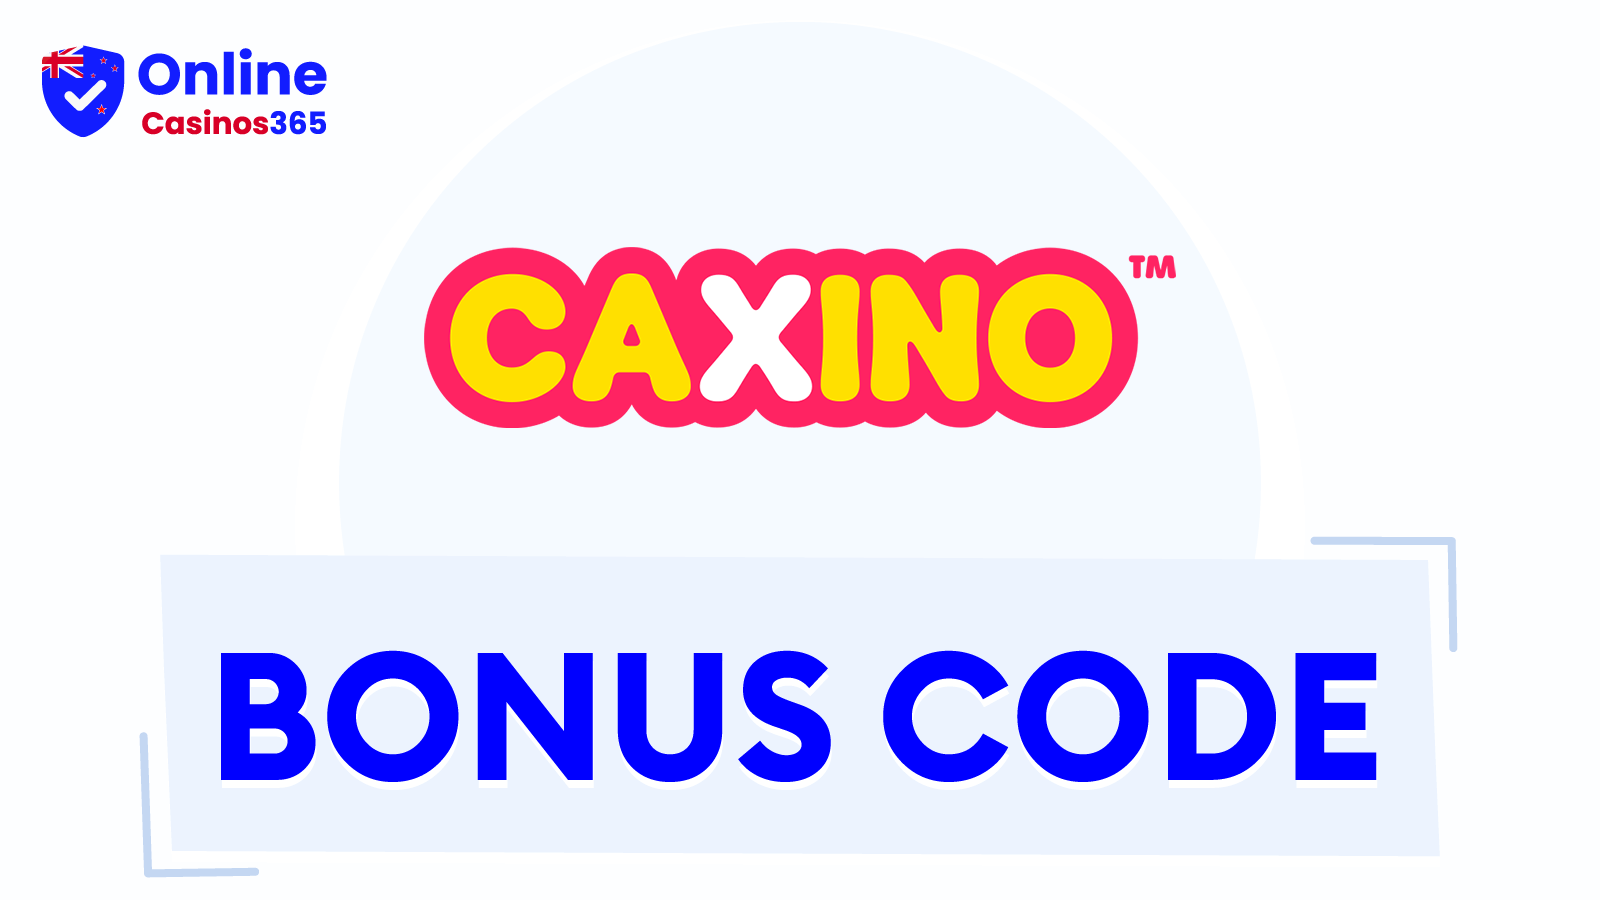 Mega Fortune - Caxino Casino